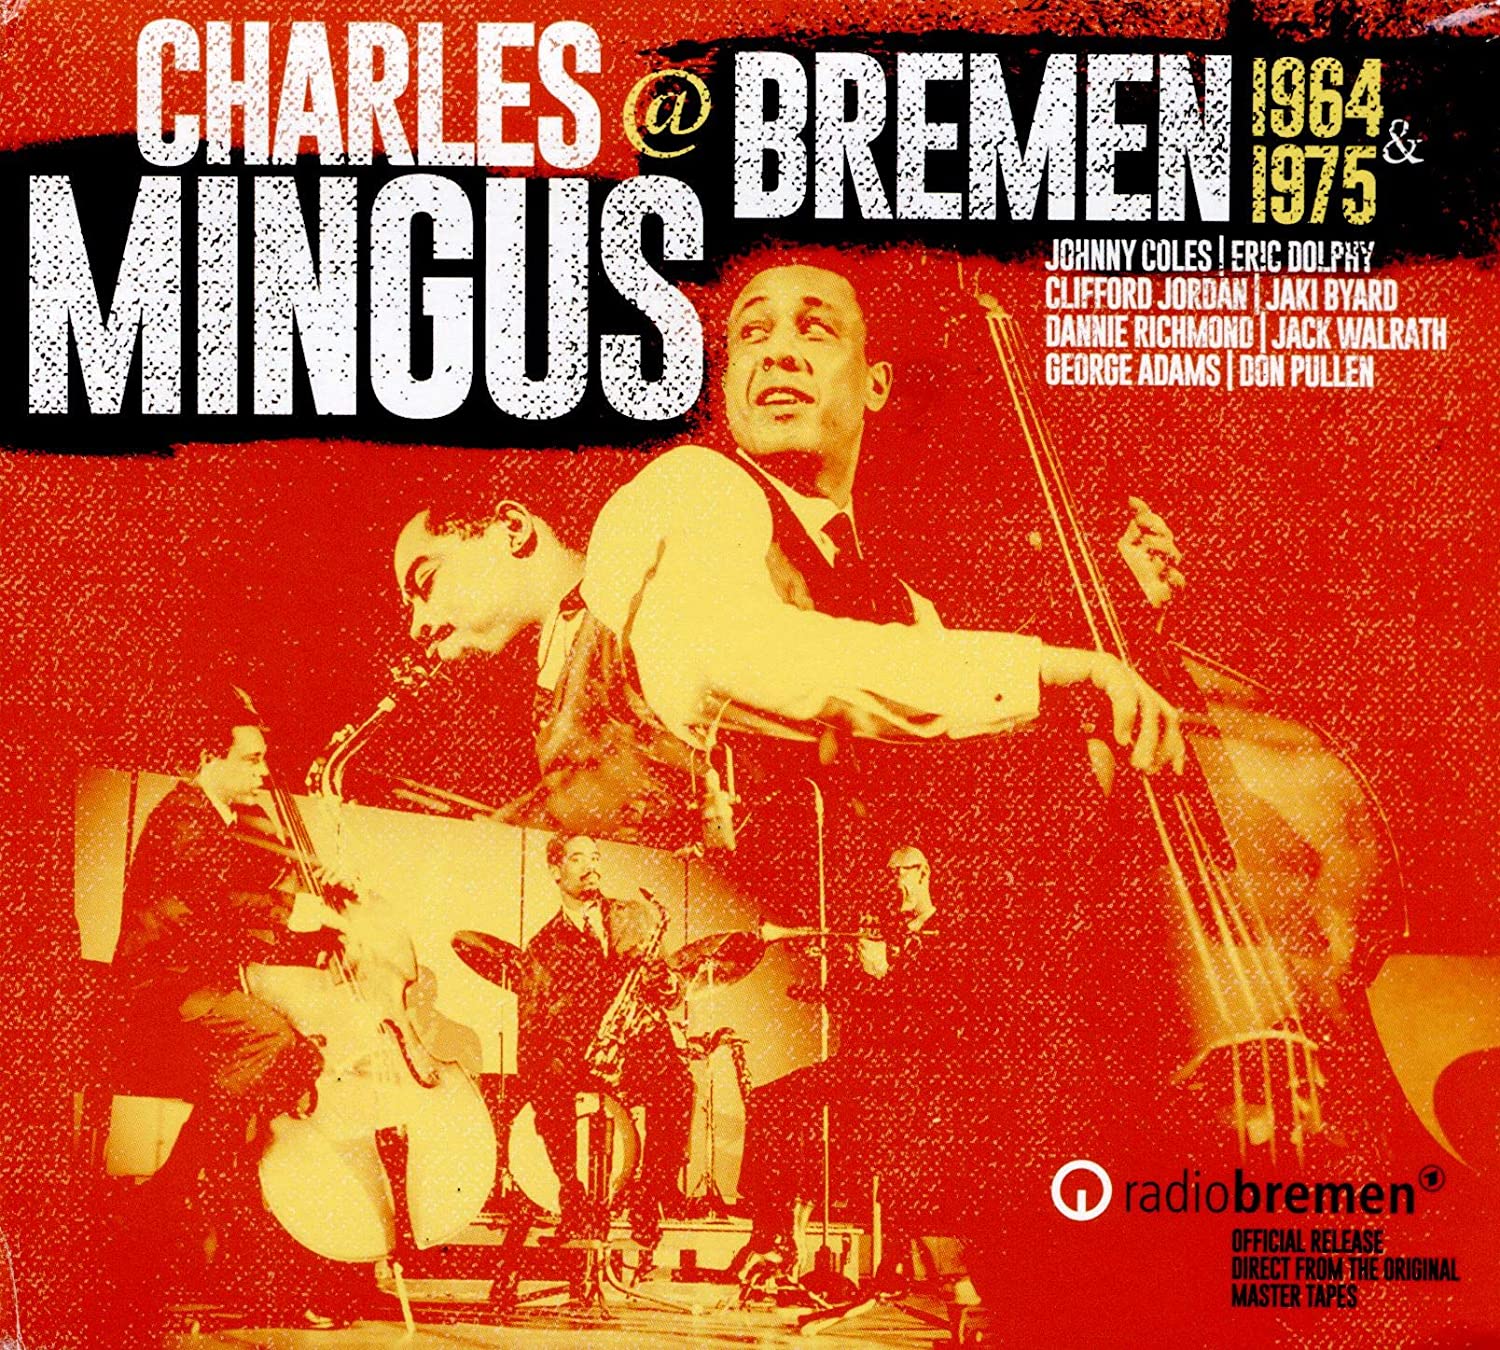 Charles Mingus @ Bremen 1964 & 1975